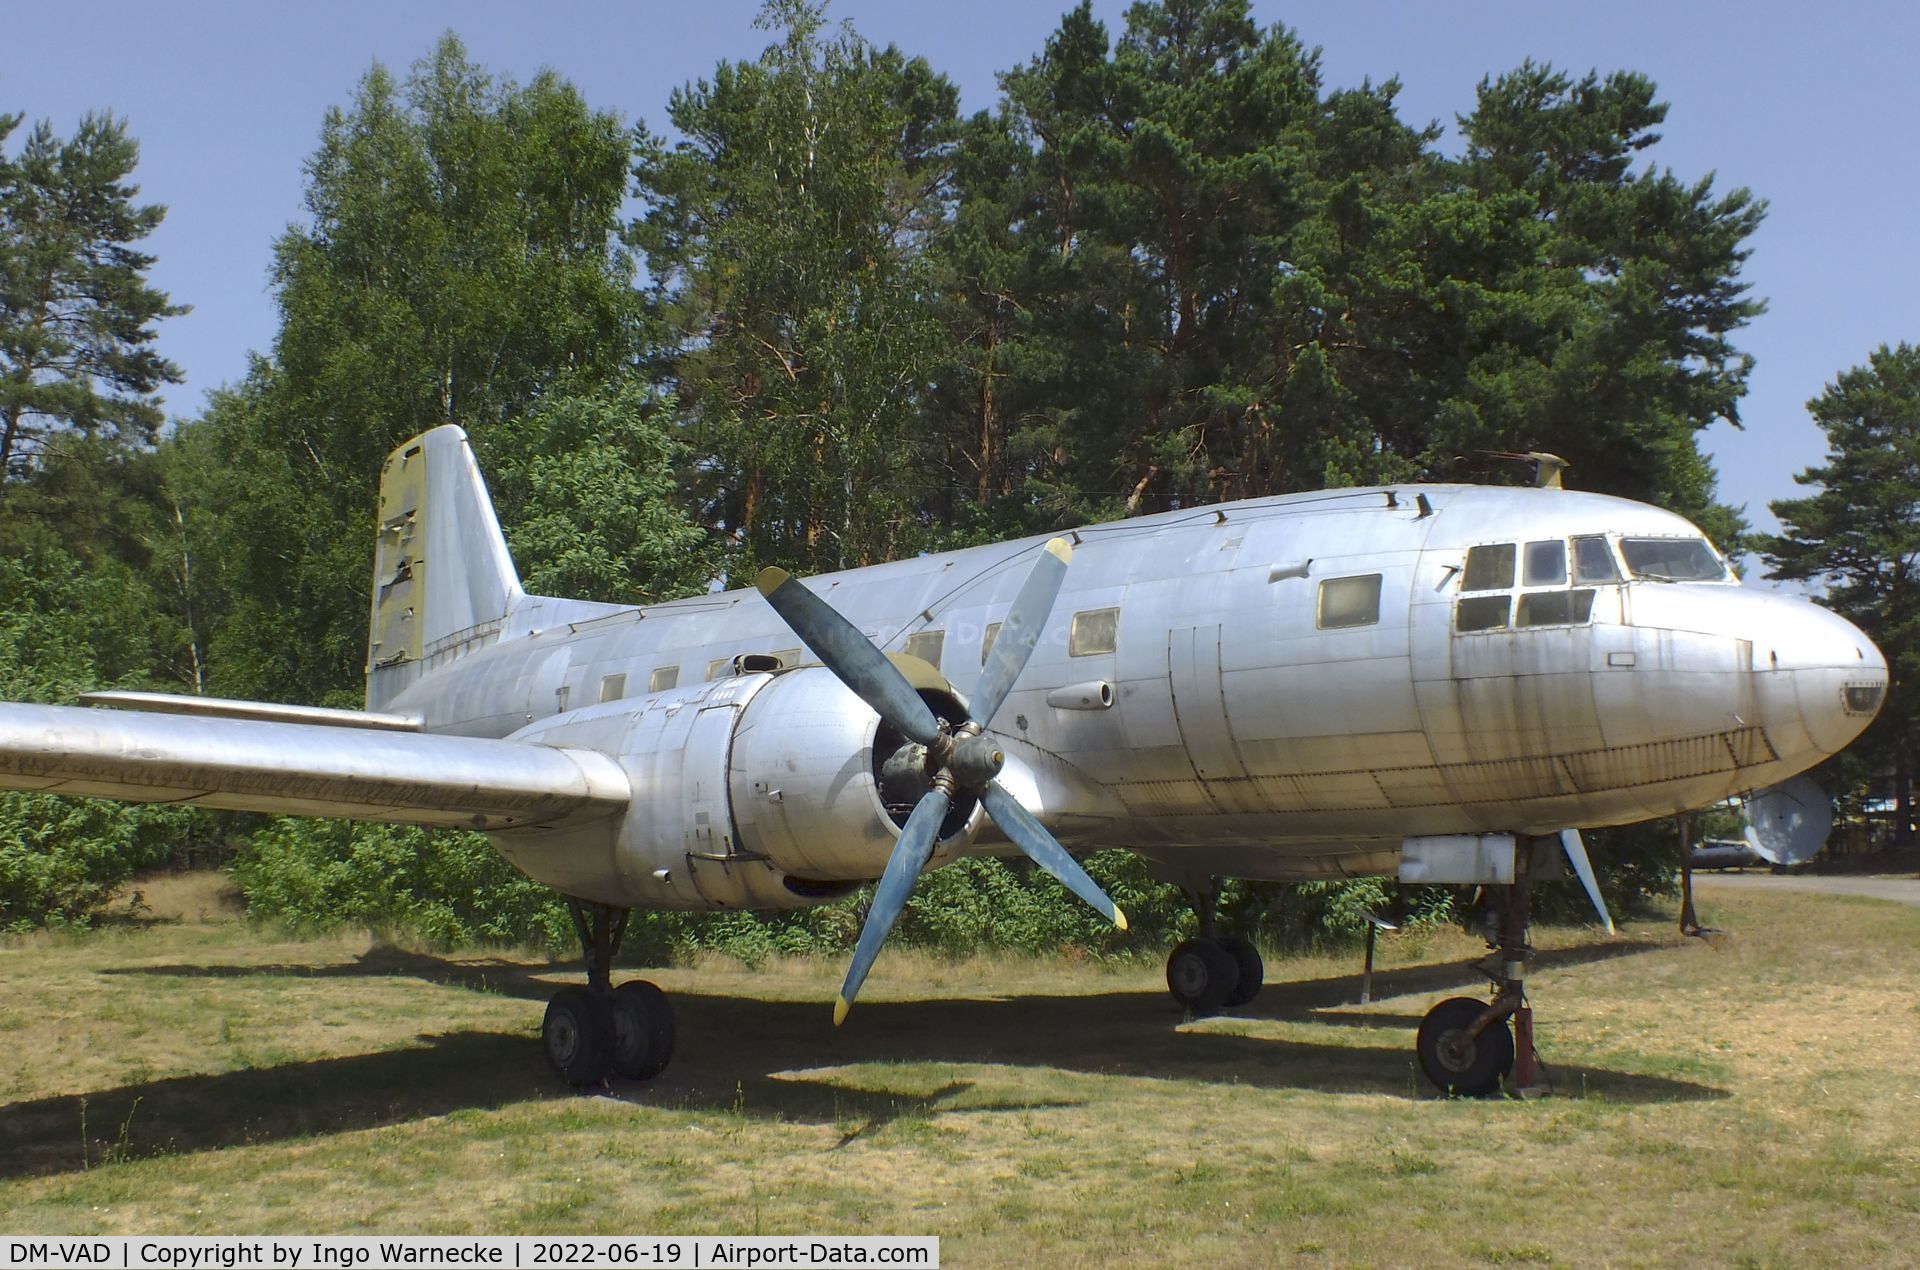 DM-VAD, 1958 Ilyushin (VEB) Il-14P C/N 14803035, Ilyushin (VEB) Il-14P CRATE at the Luftfahrtmuseum Finowfurt